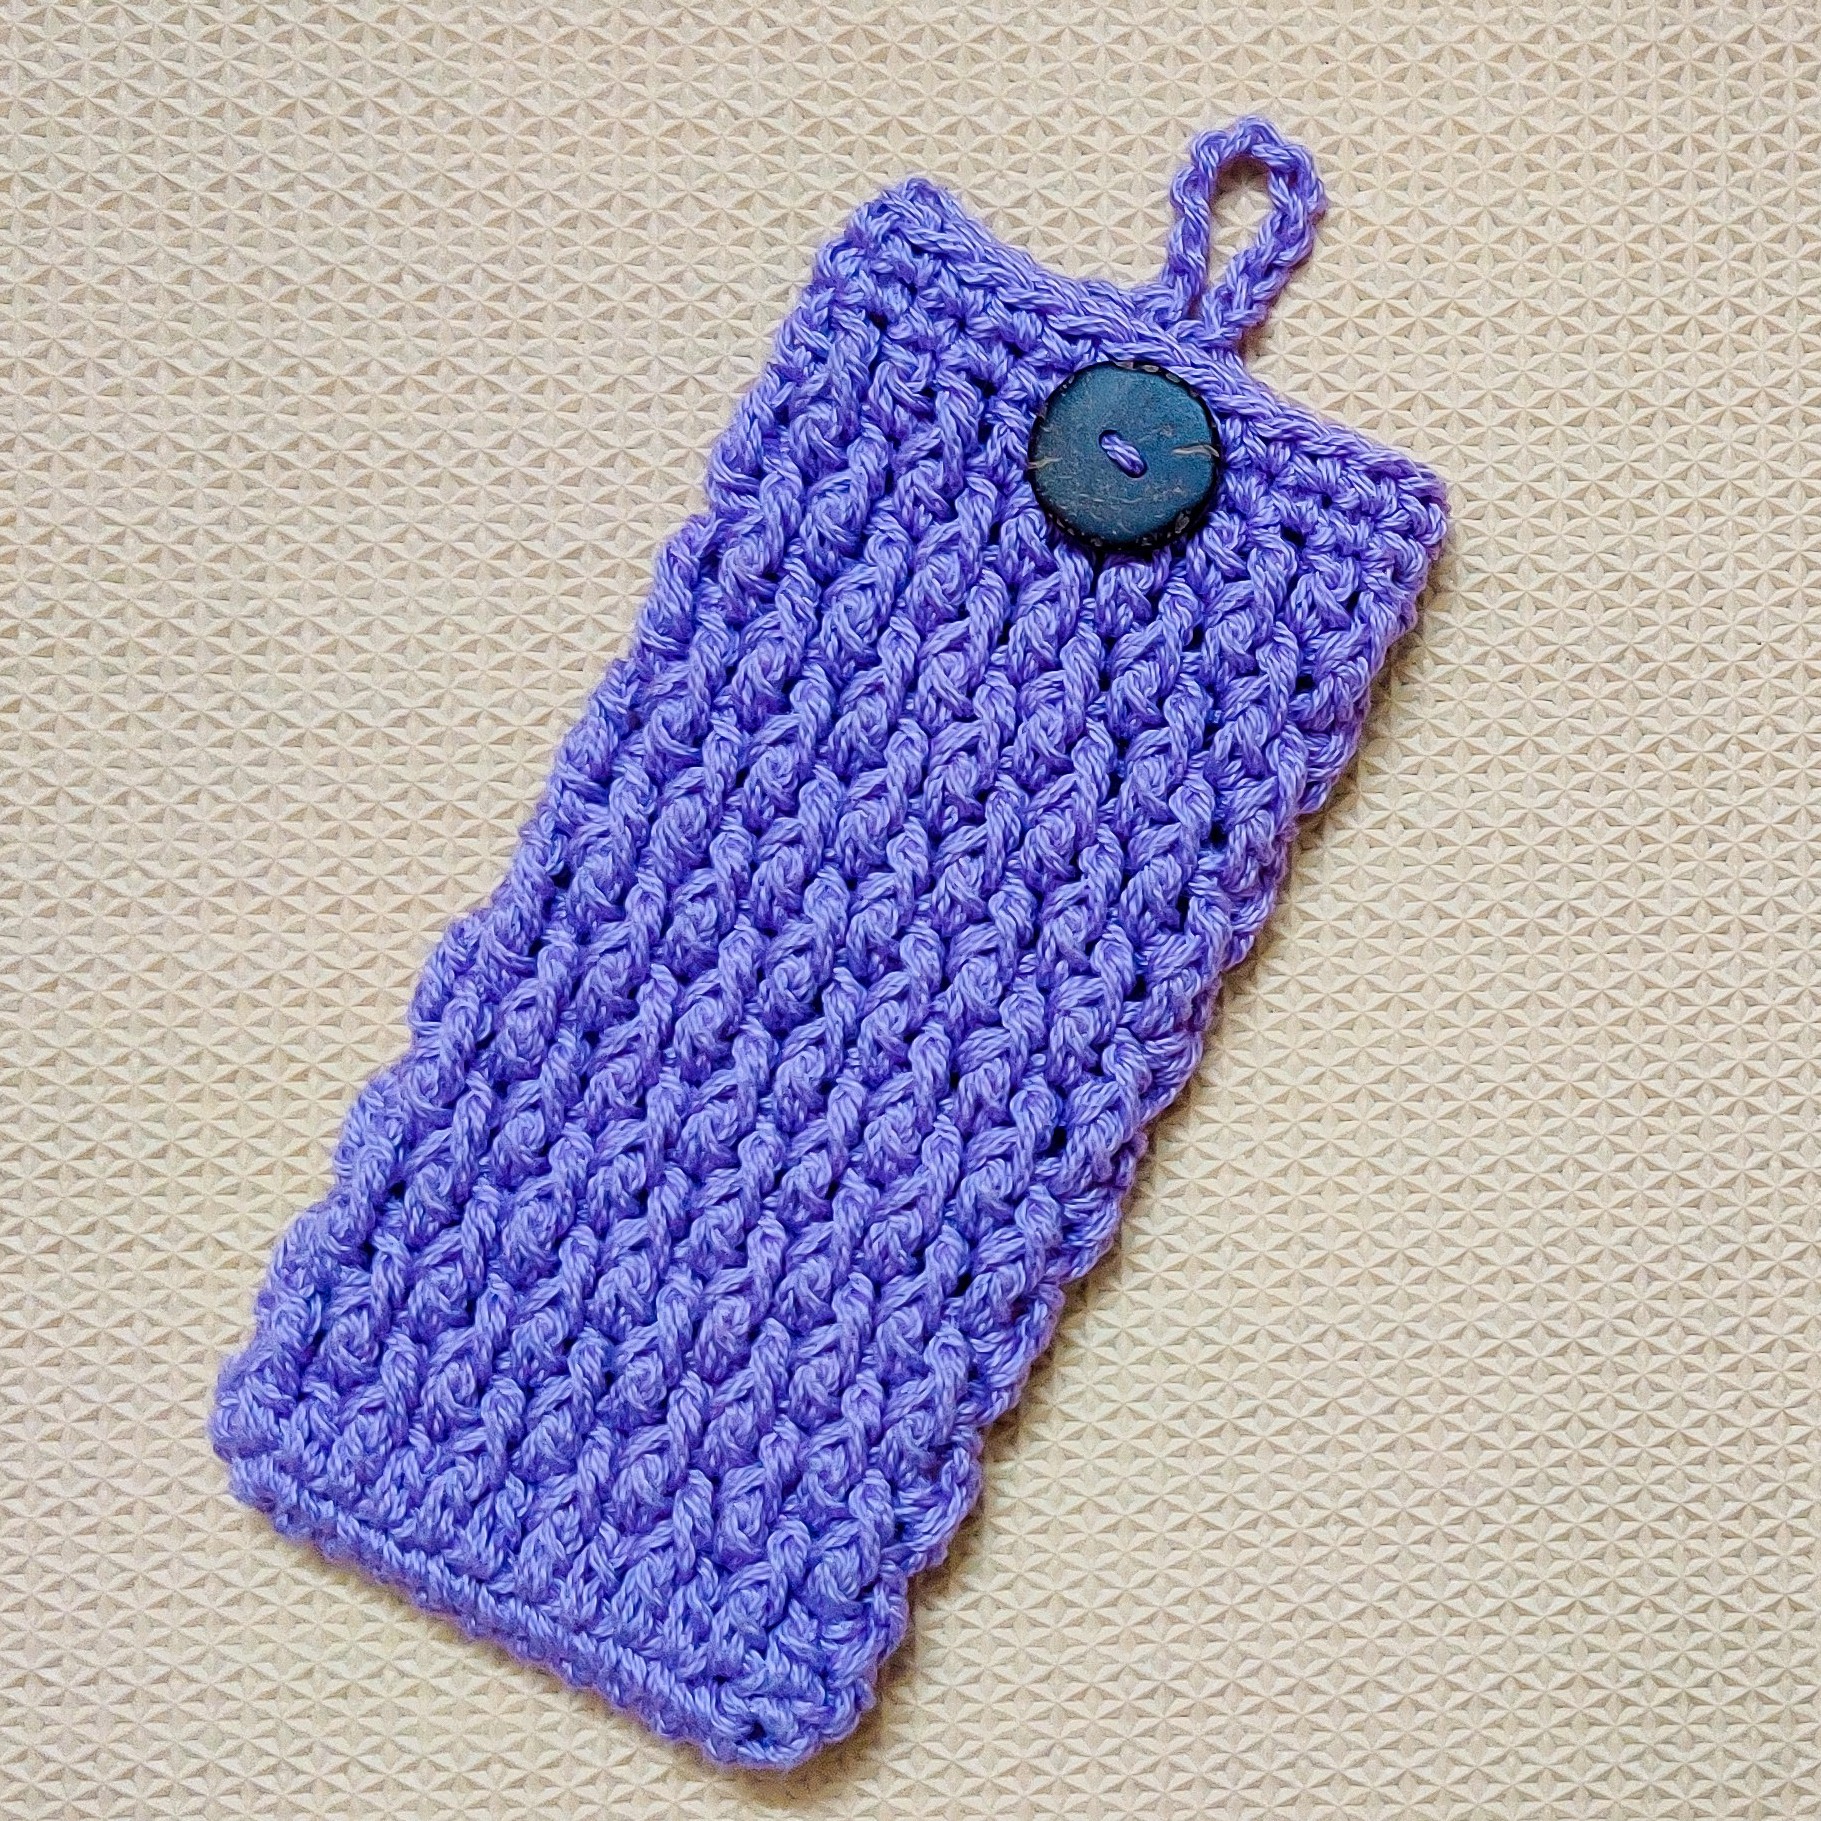 Mini Crochet Purse - Learn to Crochet - Crochet Kingdom